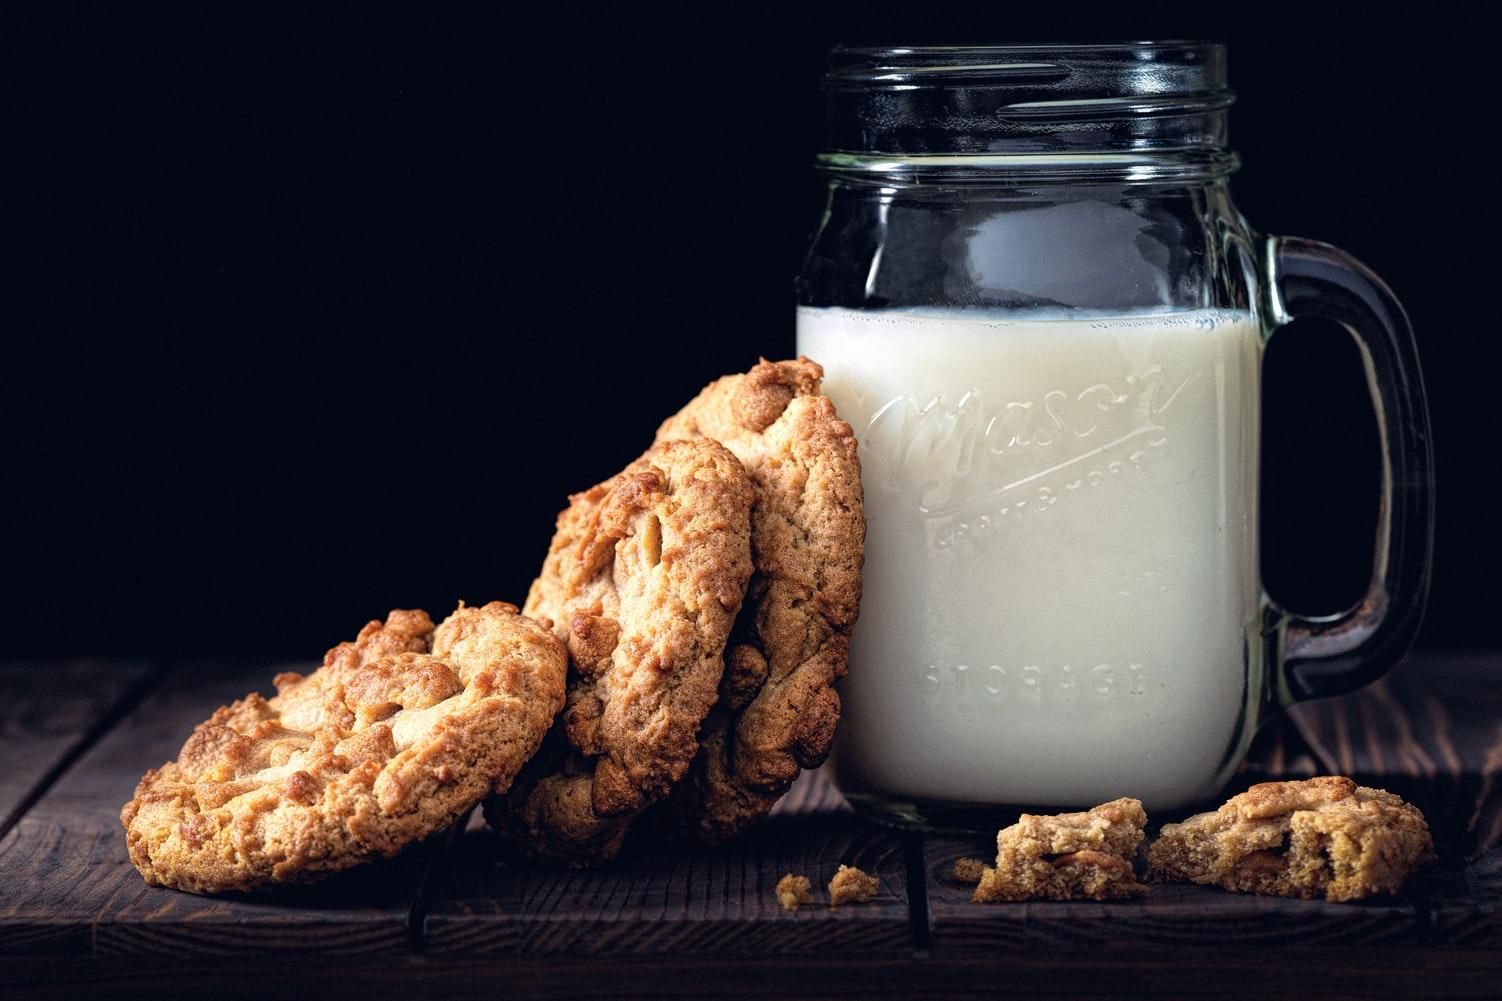 Дети, которые пьют жирное молоко, имеют меньший риск ожирения: исследование